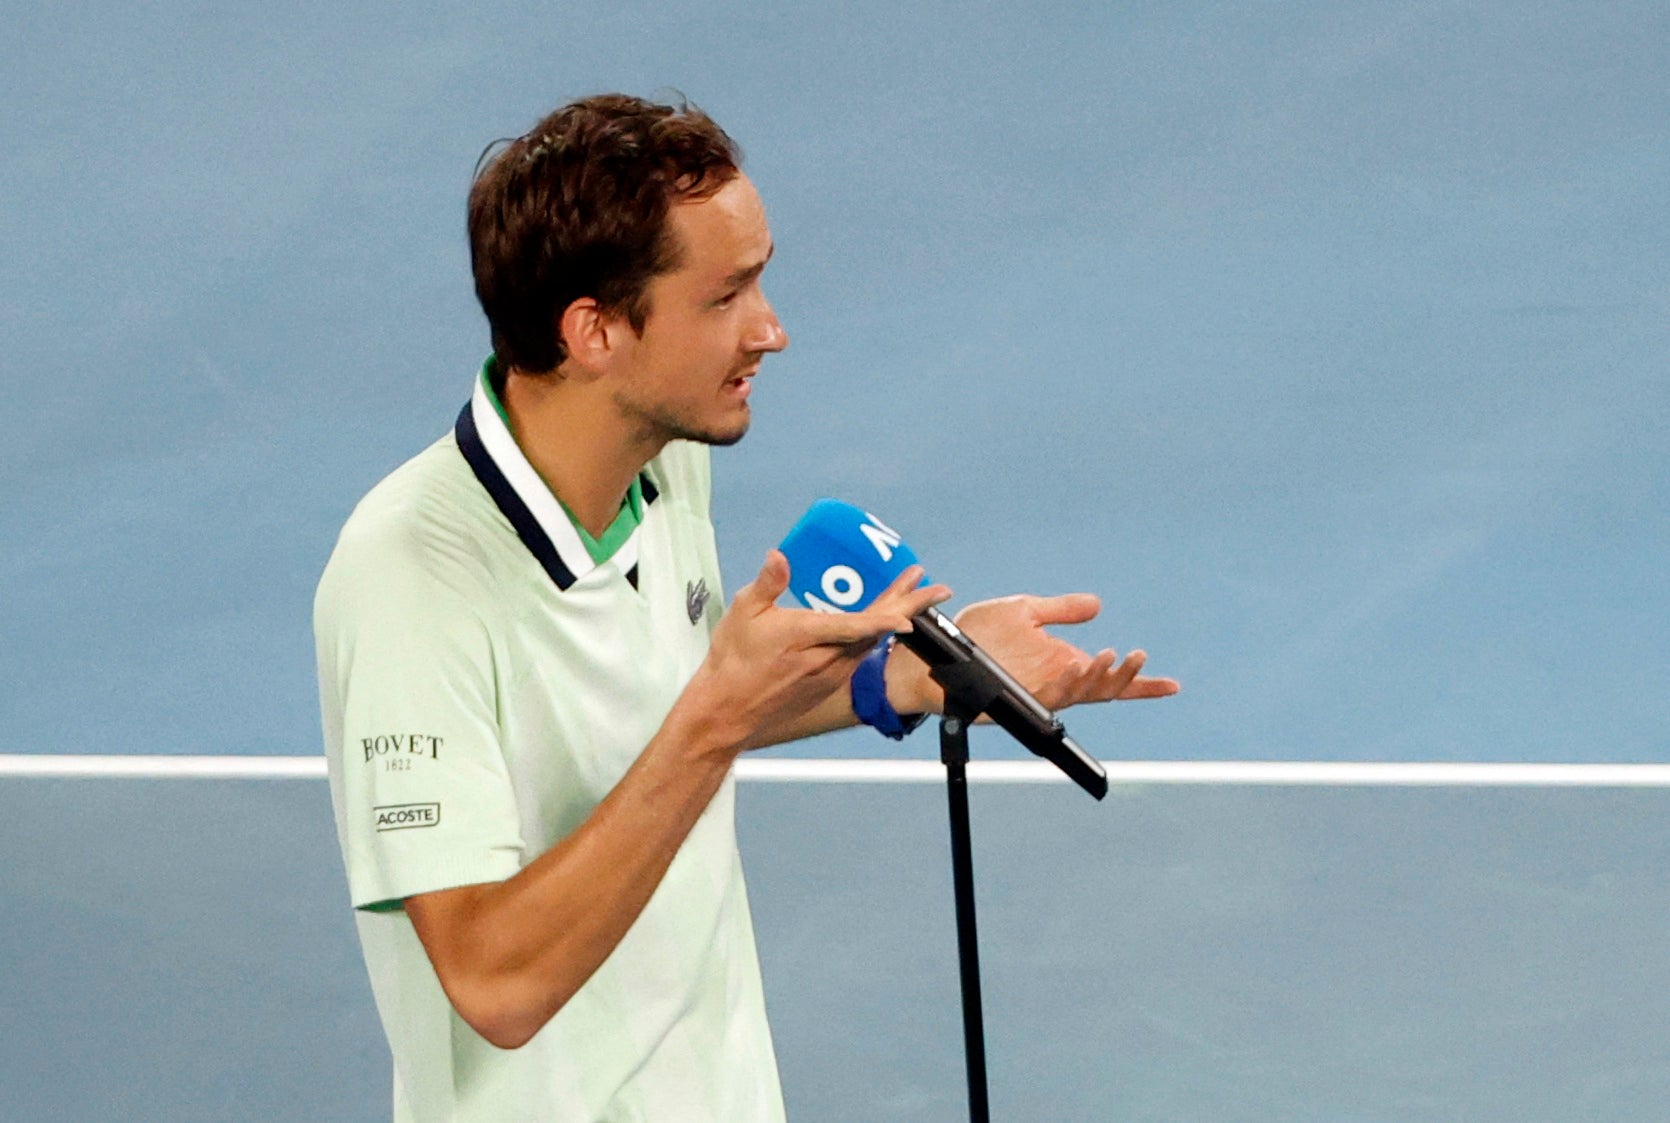 Daniil Medvedev speaks on court after the match